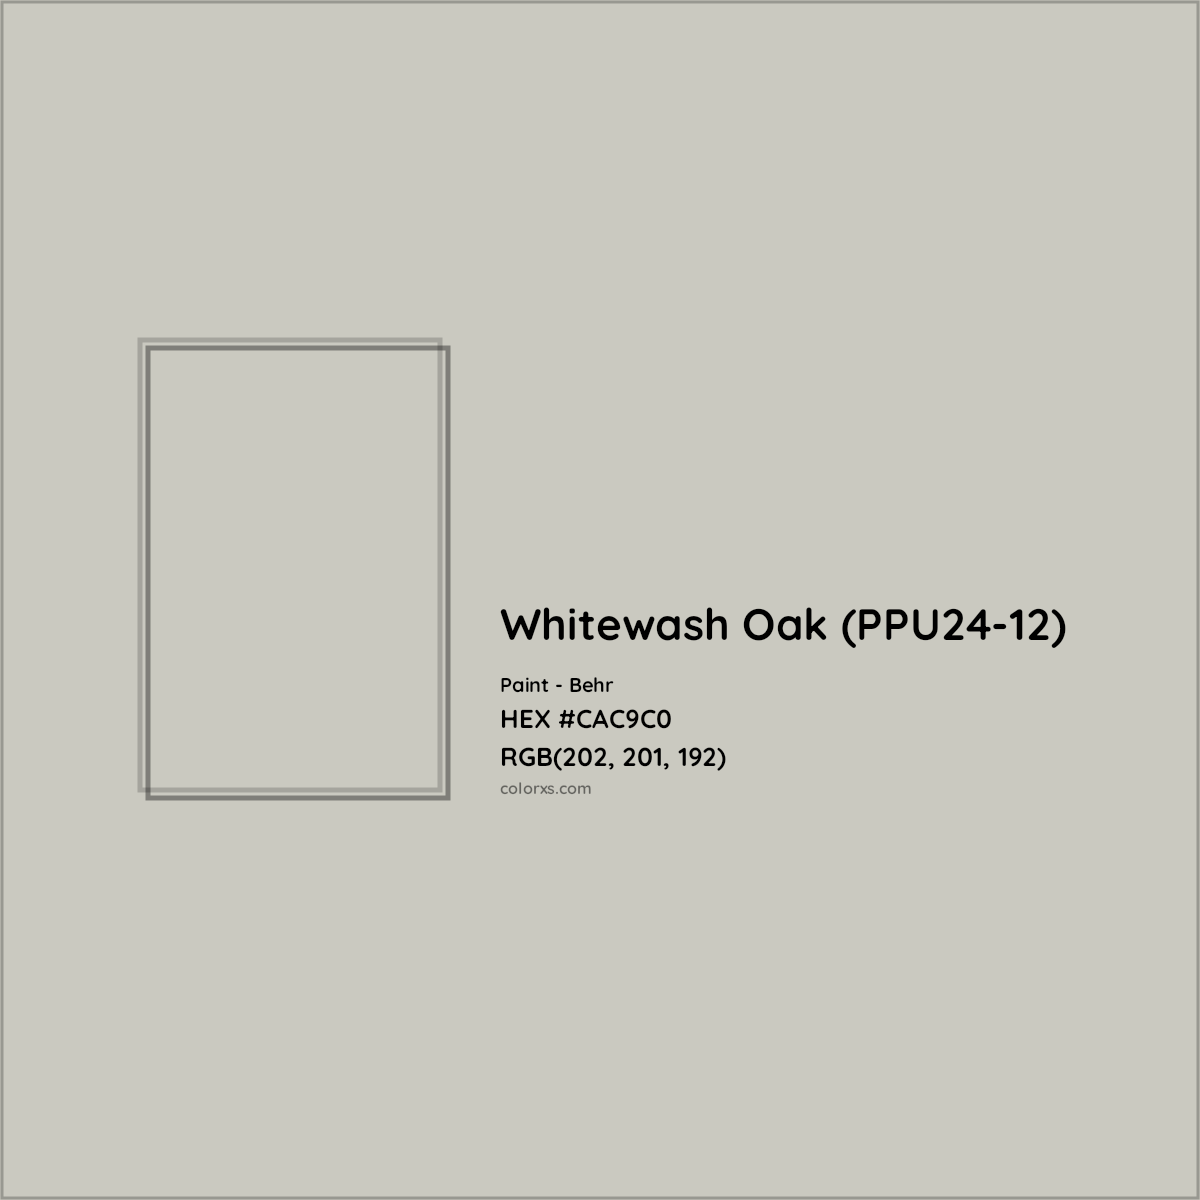 HEX #CAC9C0 Whitewash Oak (PPU24-12) Paint Behr - Color Code